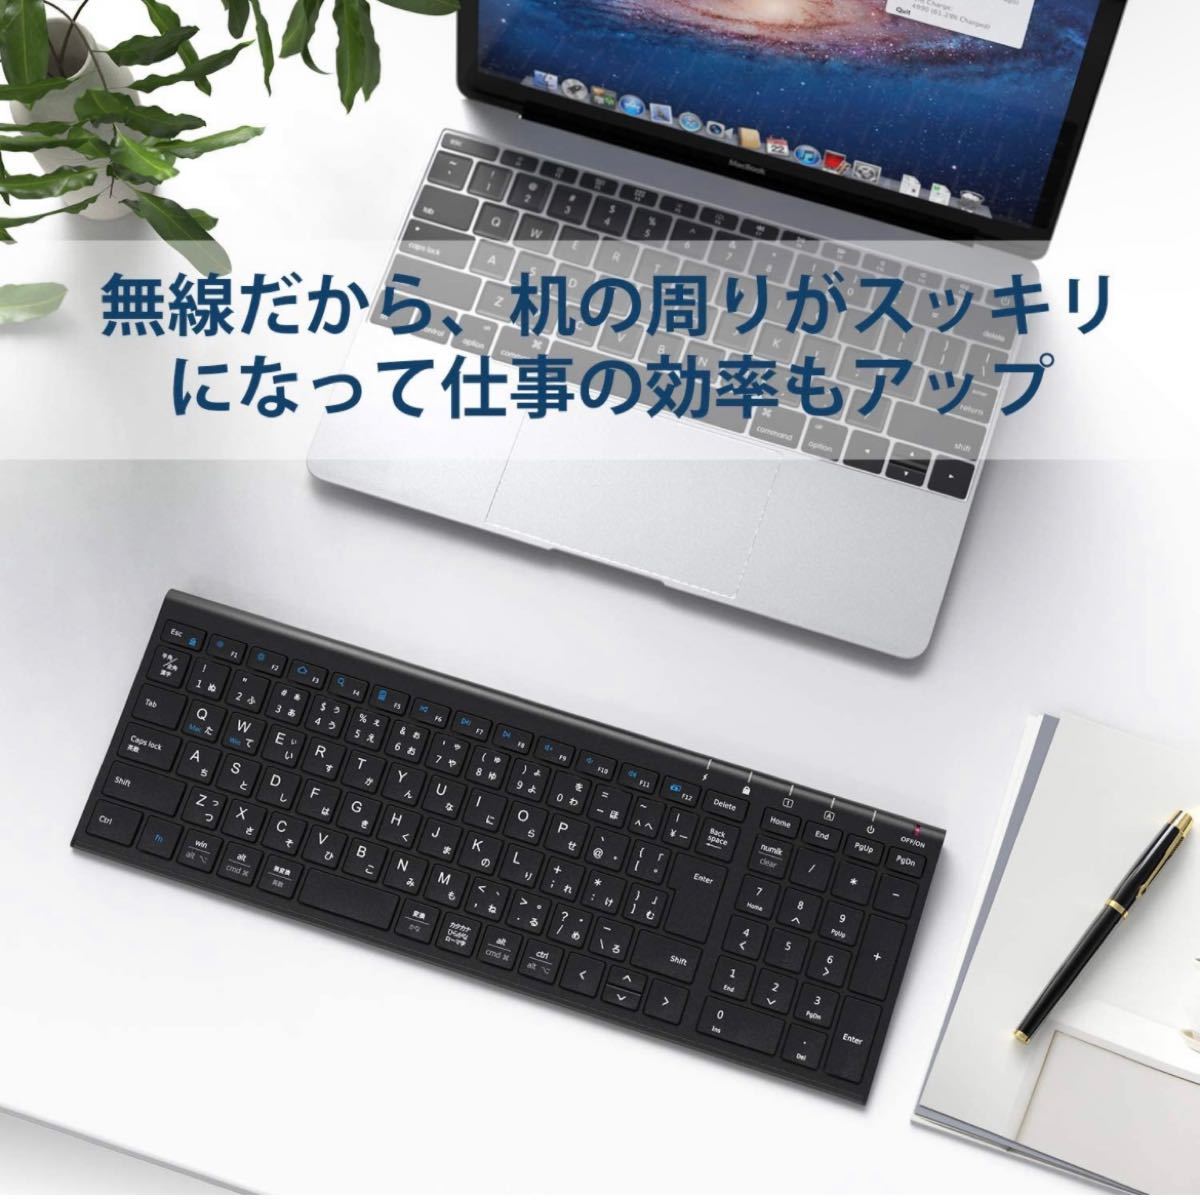 ★即購入可能★キーボードiClever キーボードワイヤレスキーボード JIS基準 日本語配列 超薄型 テンキー付き 無線 